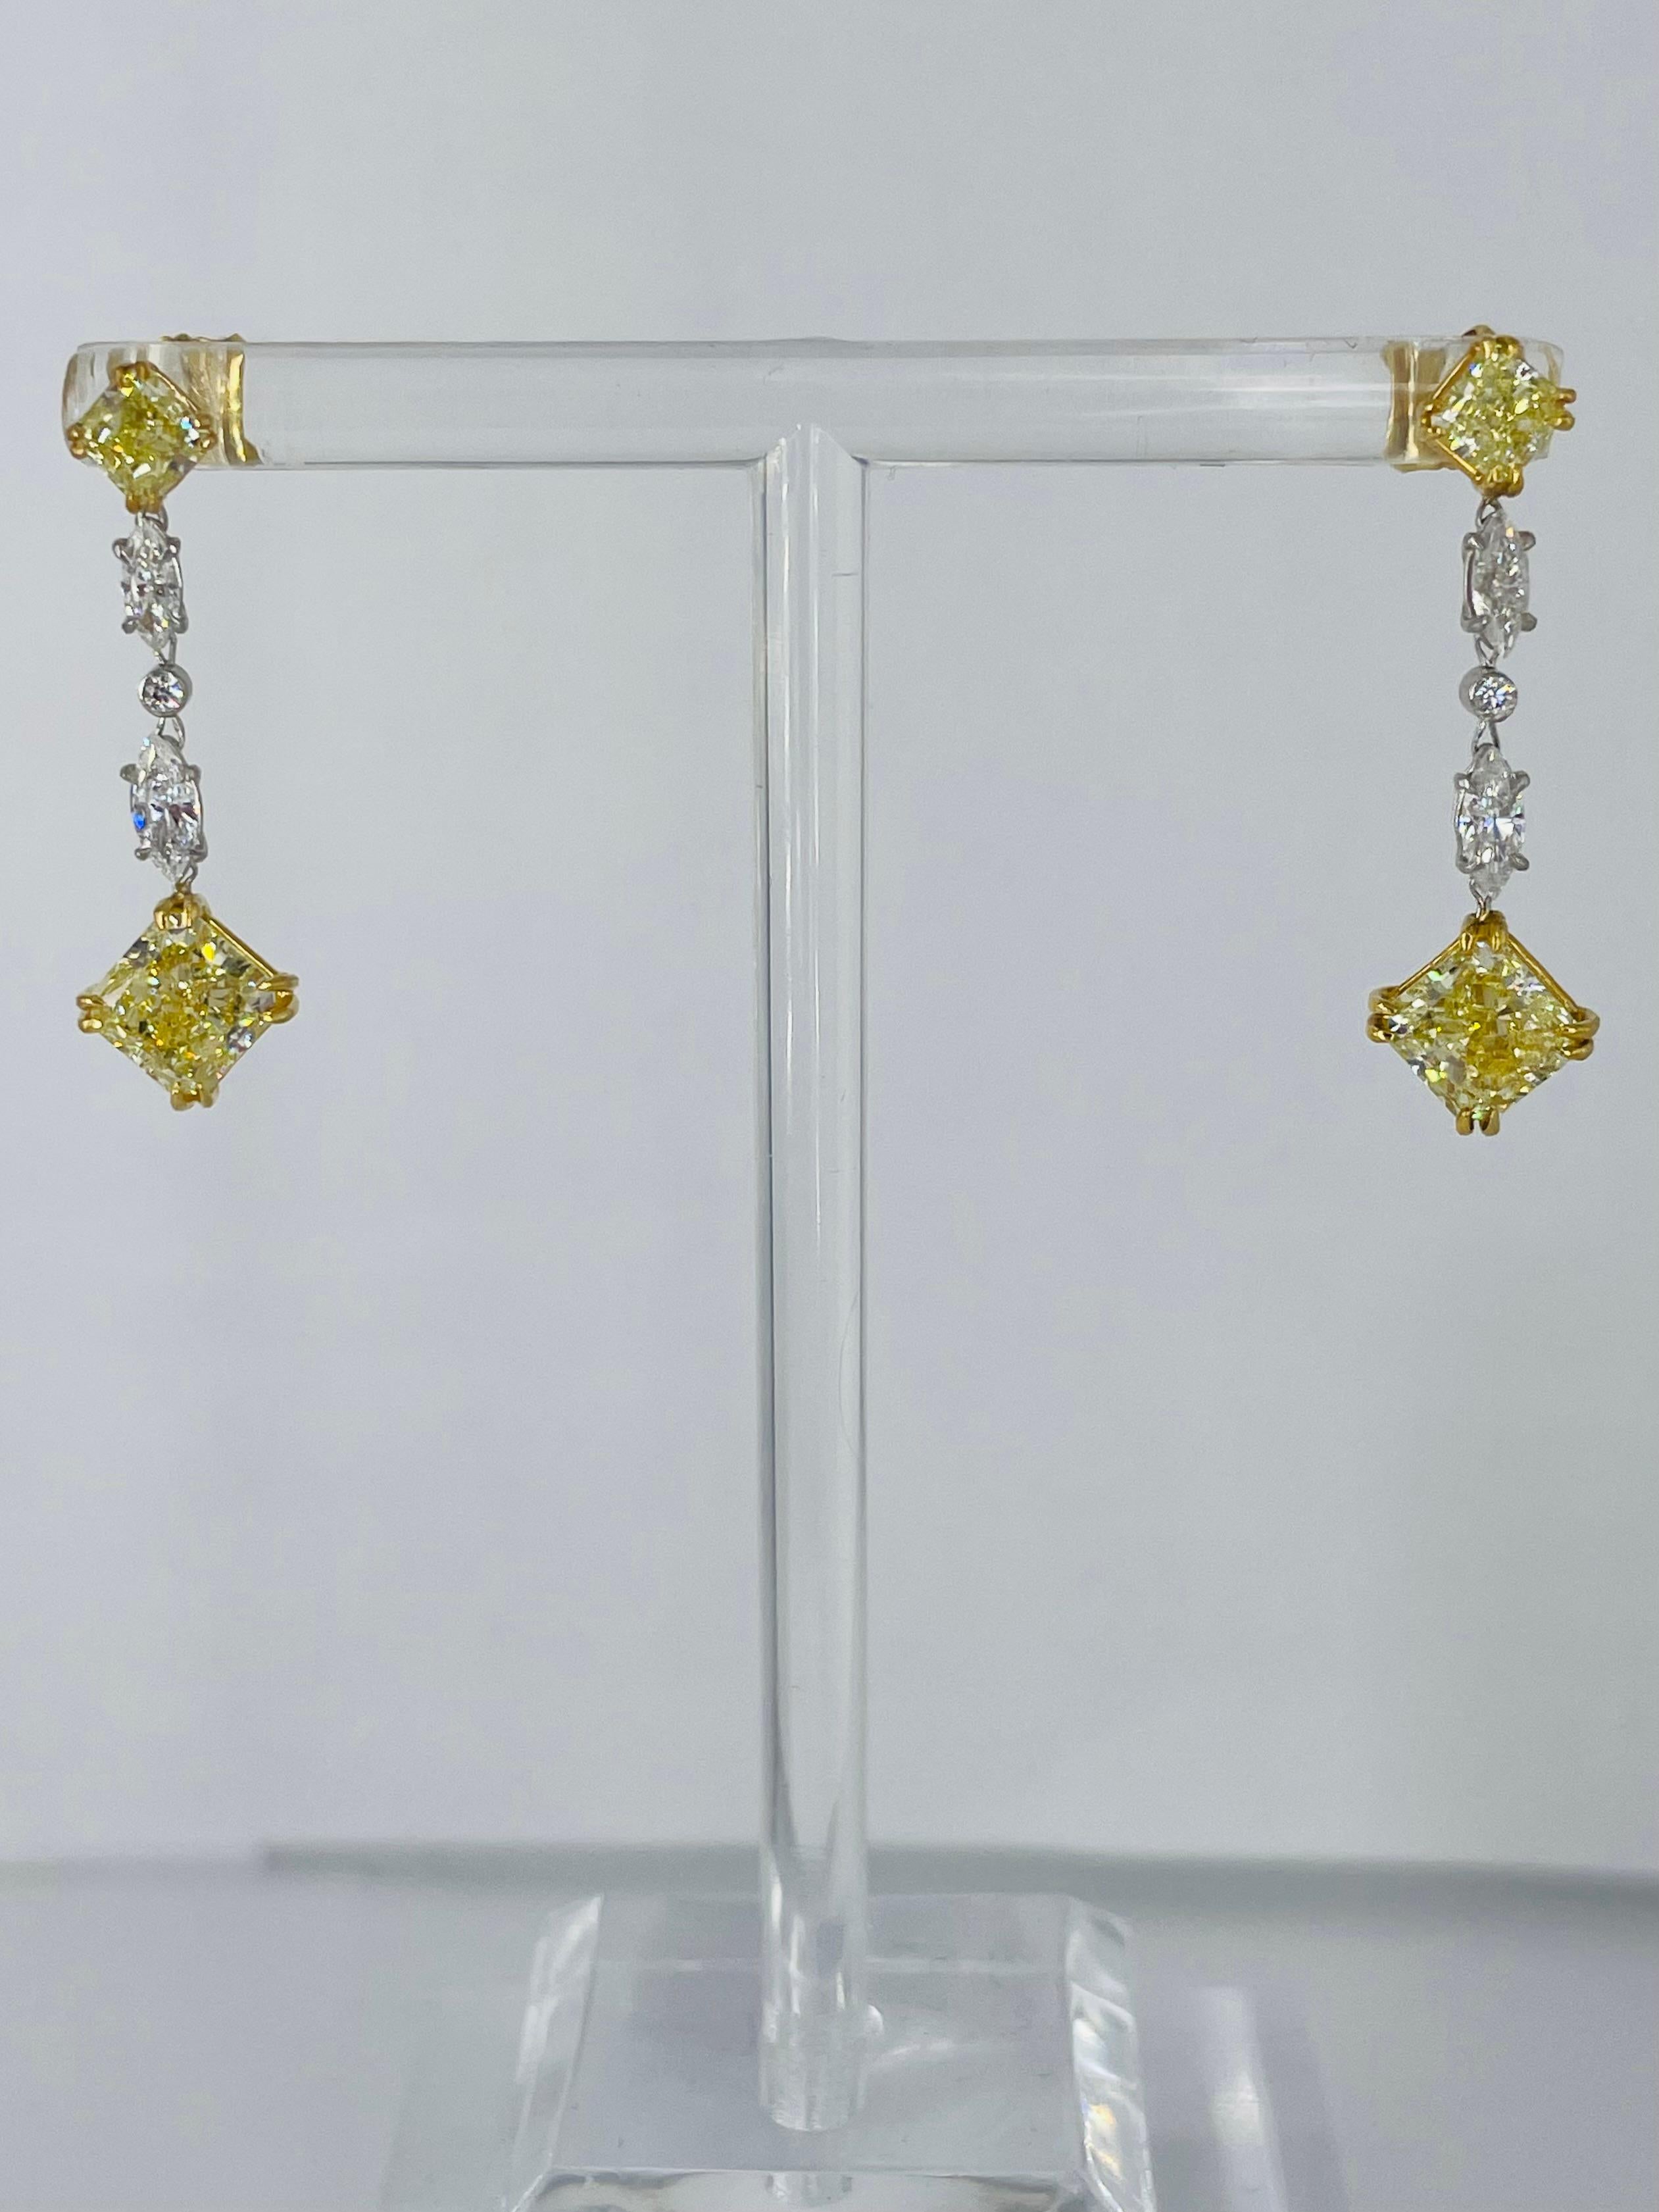 Diese funkelnden, verspielten Ohrringe von J. Birnbach sind die perfekte Ergänzung für jede Schmucksammlung! Die aus 18 Karat Gelbgold und Platin gefertigten Ohrringe beginnen mit einem gelben Brillanten, gefolgt von weißen Marquise- und runden